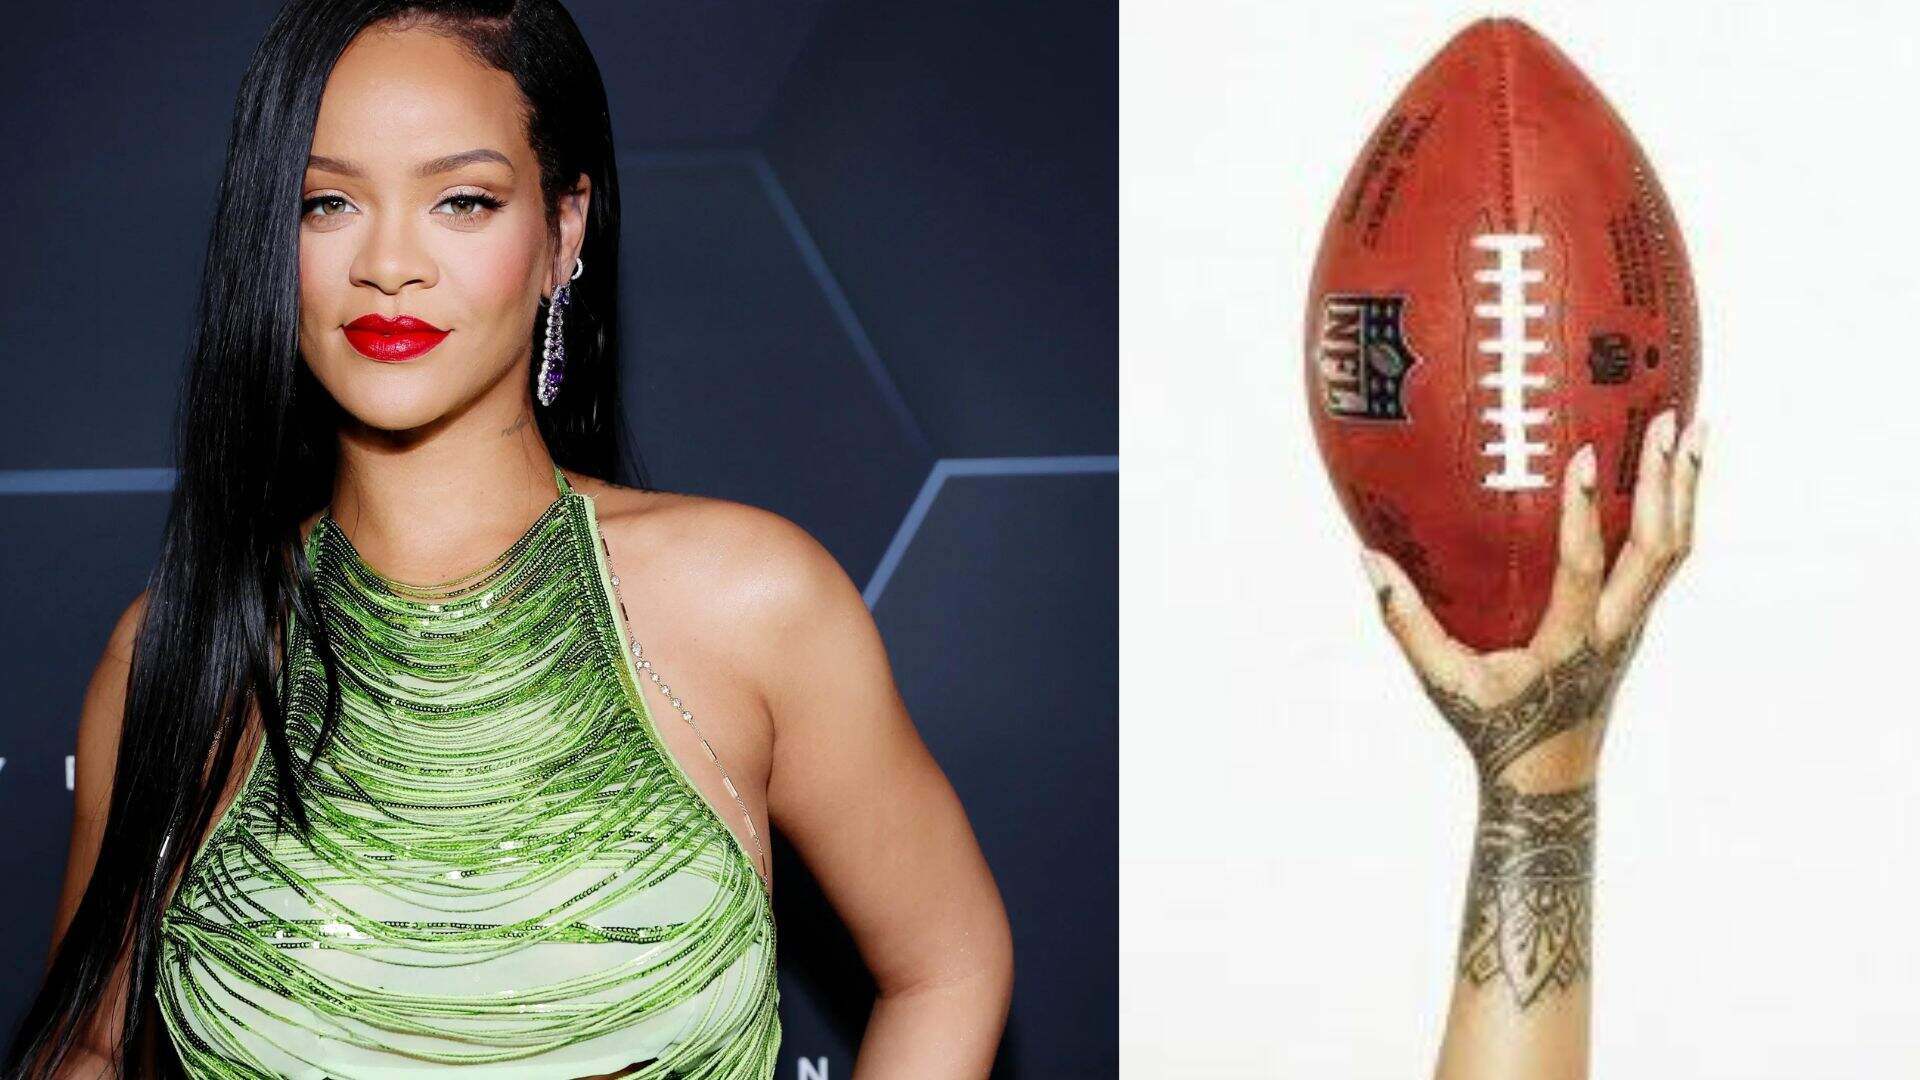 Como será o show de Rihanna no Super Bowl 2023? Cantora surpreende e revela o inesperado  - Metropolitana FM